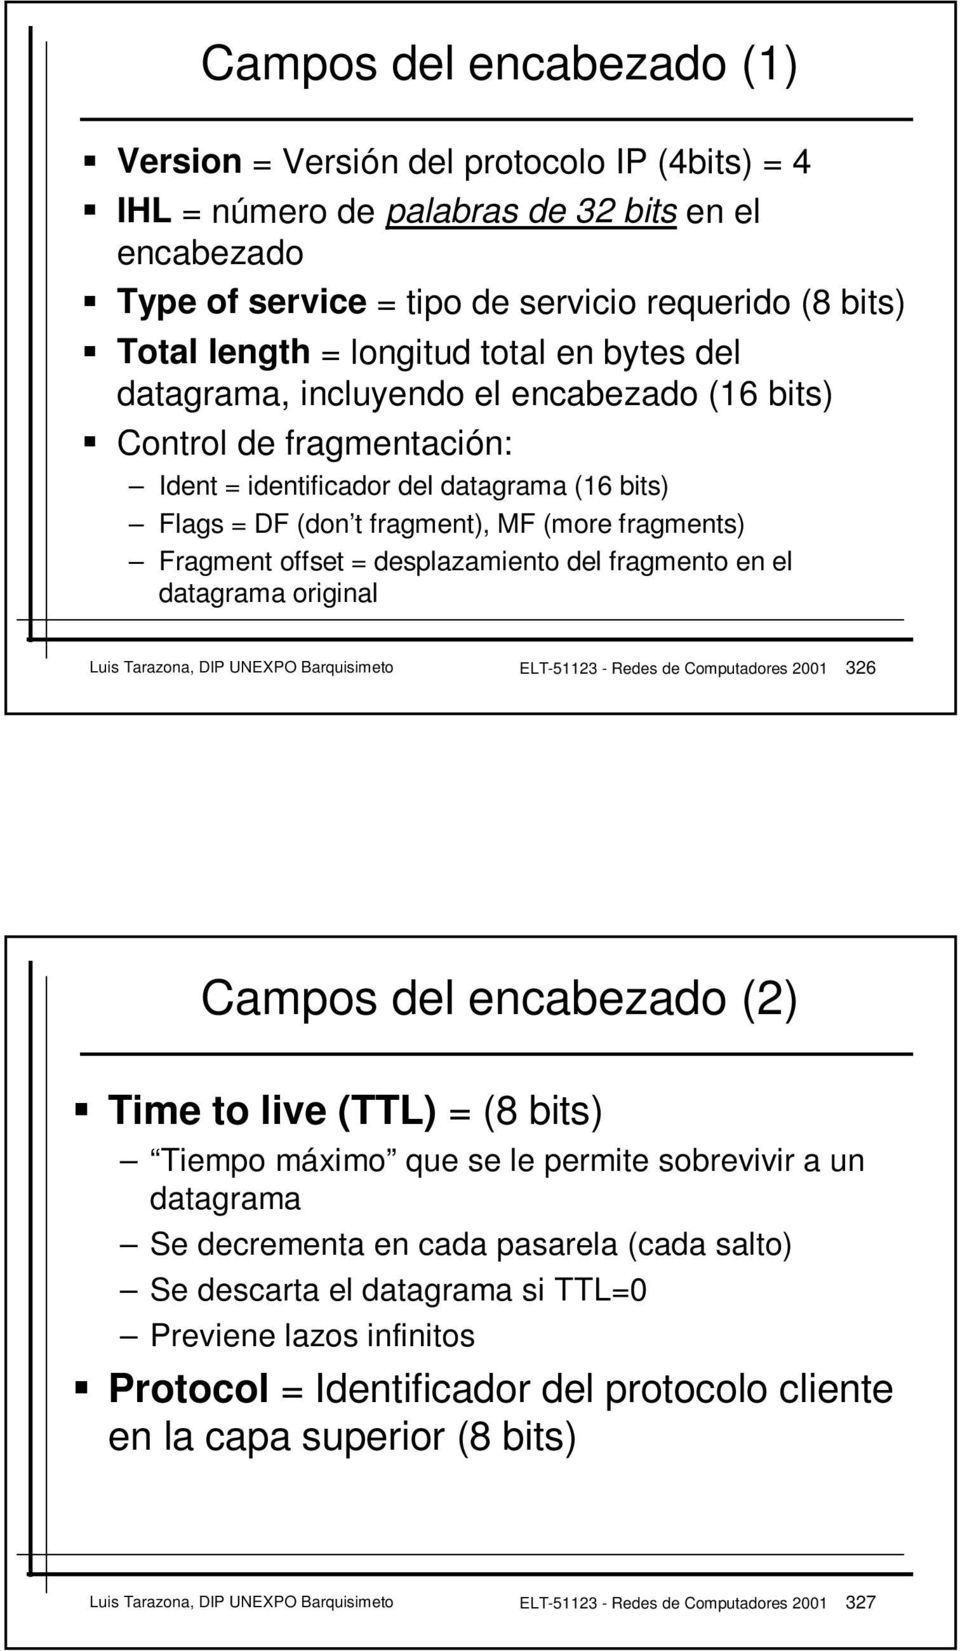 Fragment offset = desplazamiento del fragmento en el datagrama original Luis Tarazona, DIP UNEXPO Barquisimeto ELT-51123 - Redes de Computadores 2001 326 Campos del encabezado (2) Time to live (TTL)